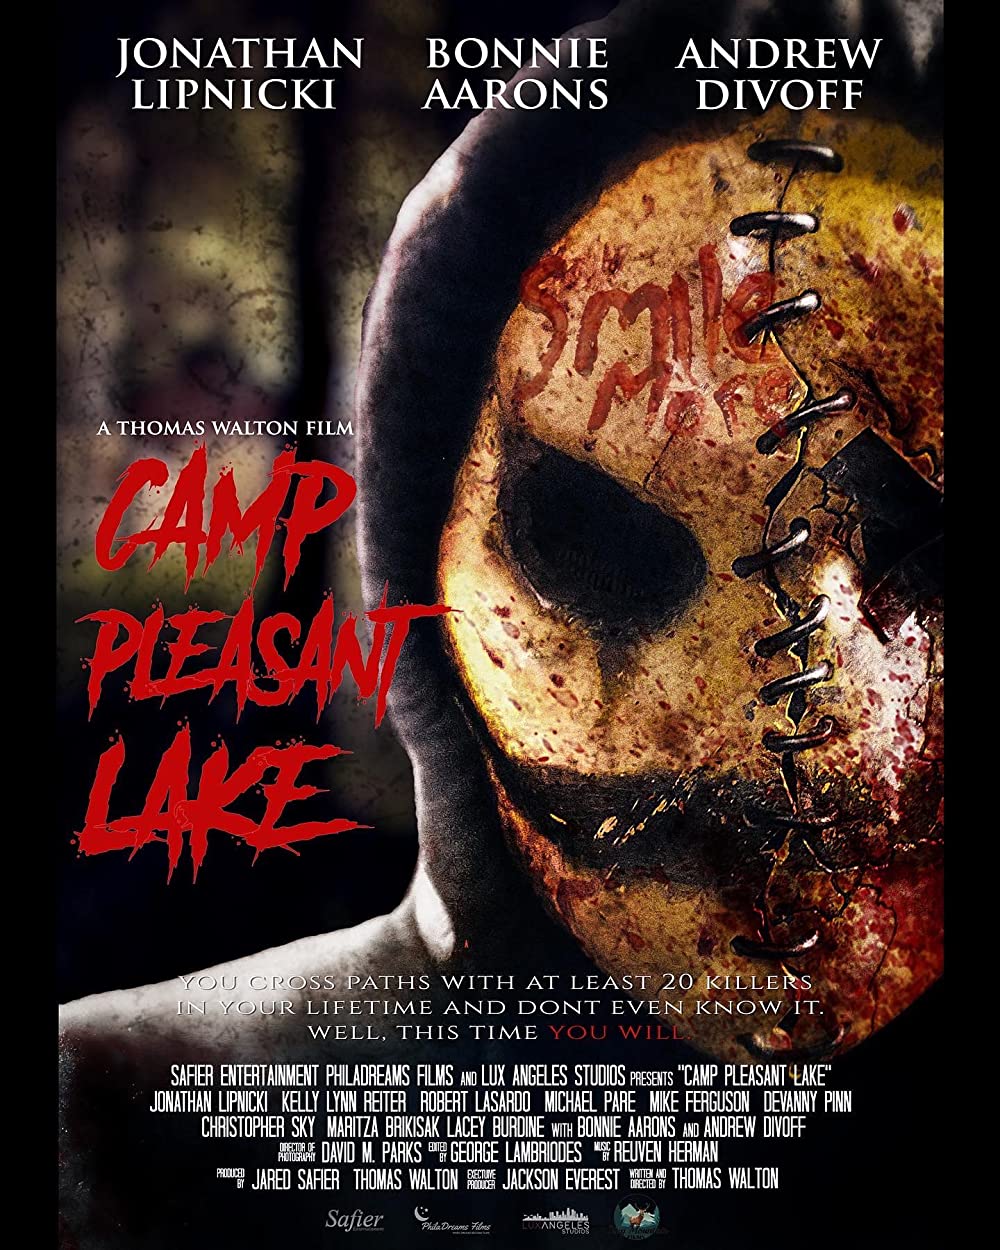 Camp Pleasant Lake Trailer & Poster 2